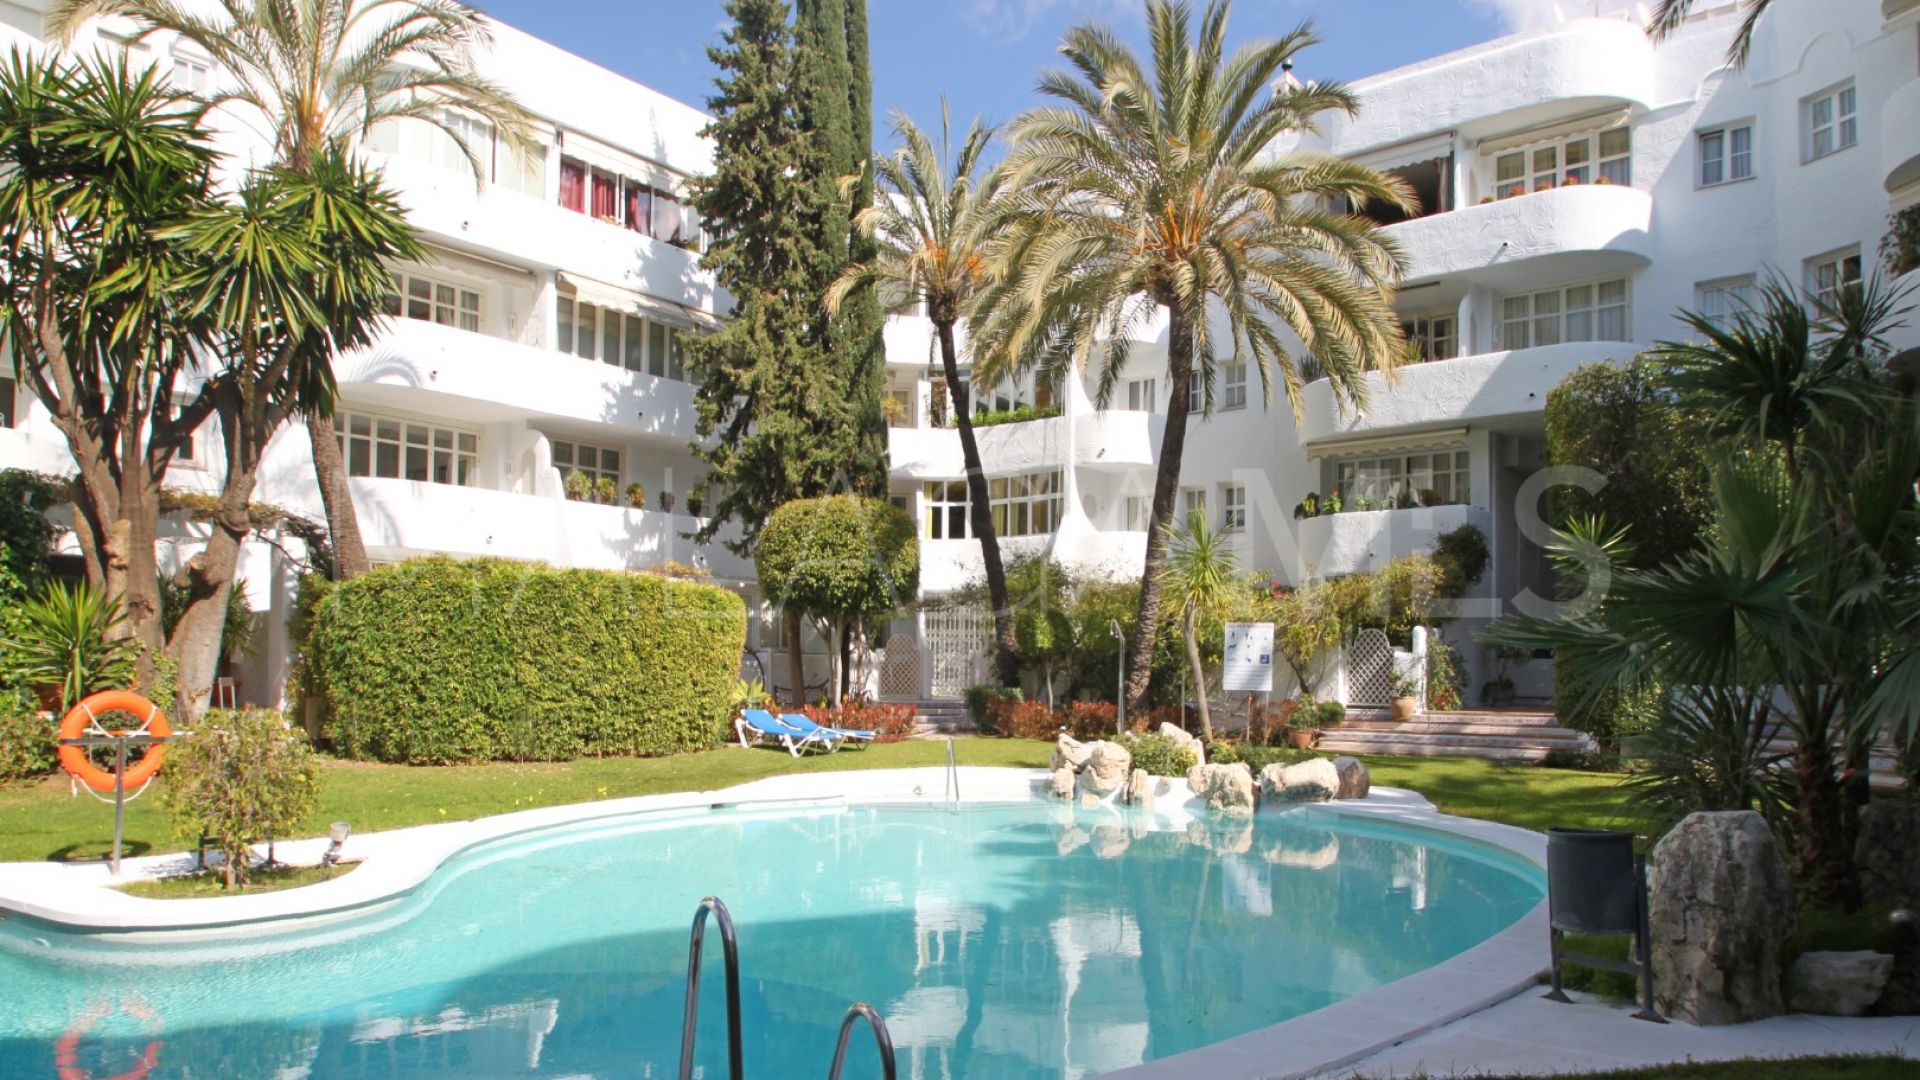 Marbella Real 3 bedrooms ground floor duplex for sale